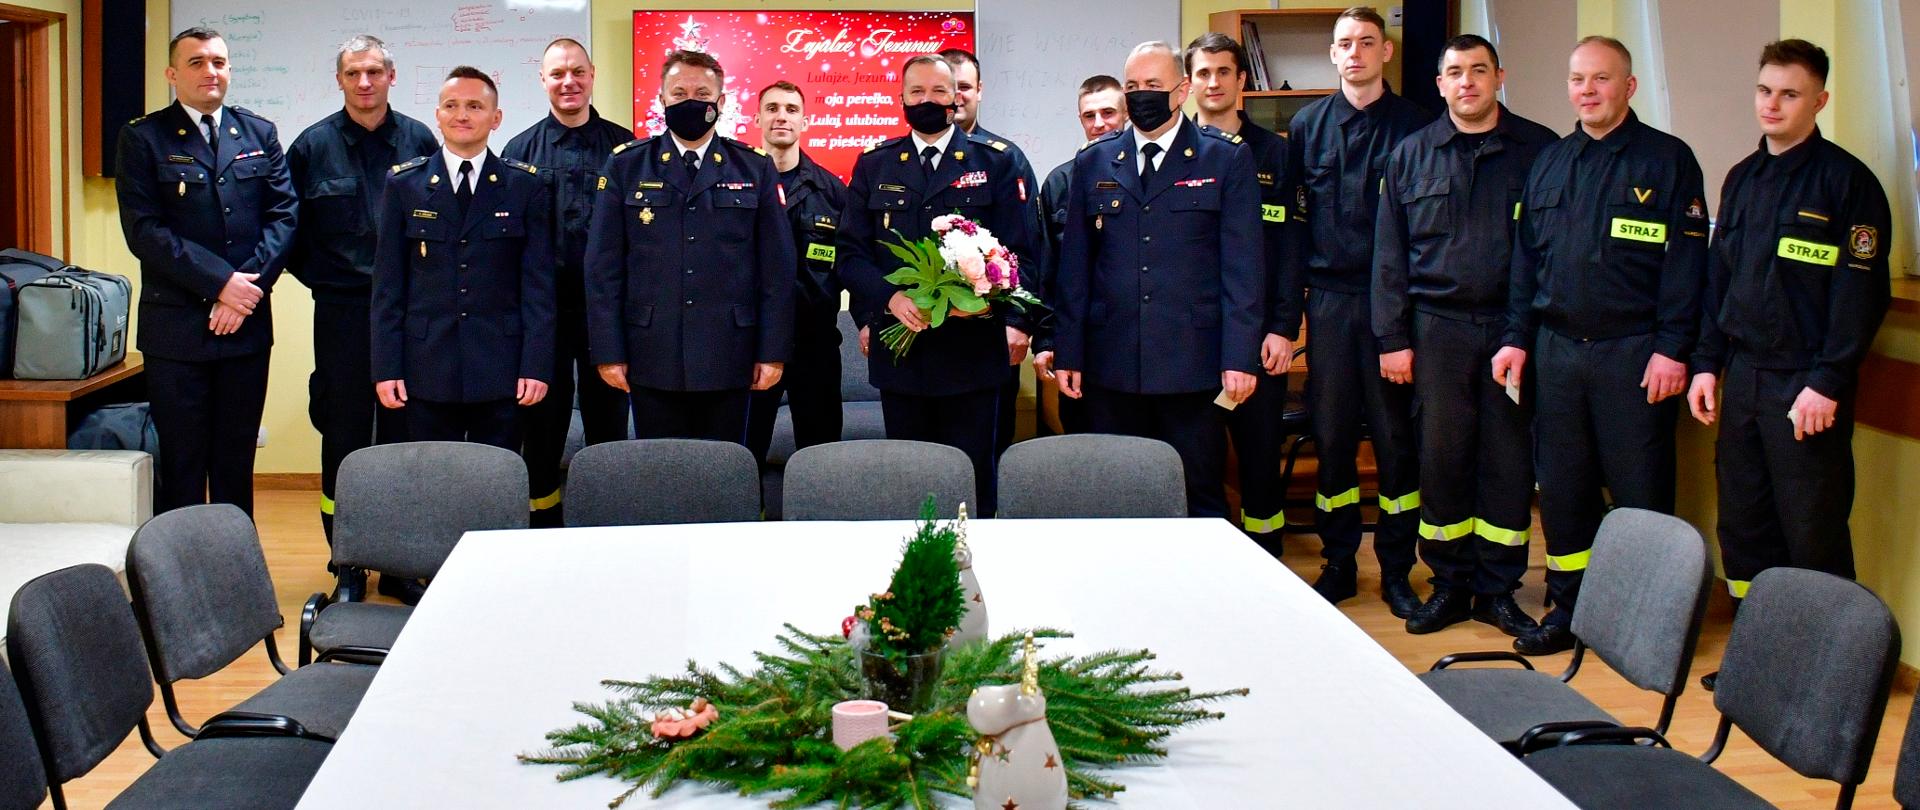 Na zdjęciu widać grupę 15 strażaków, którzy stoją za świątecznym stołem nakrytym białym obrusem. W środku zdjęcia widać świąteczny stroik.